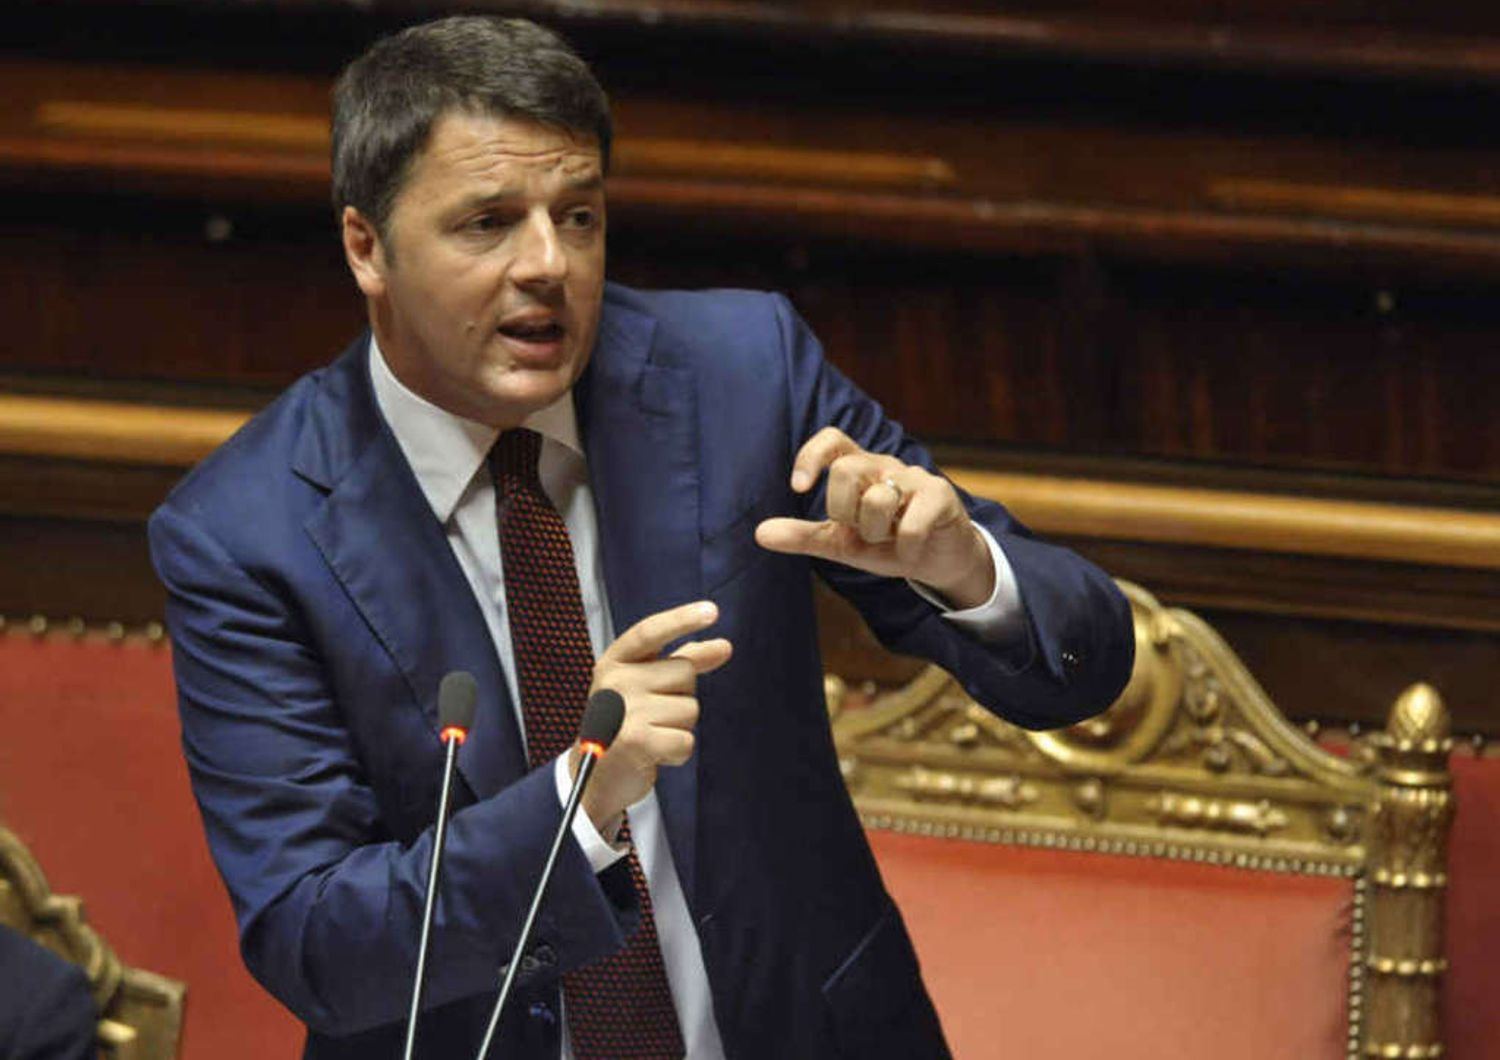 Lavoro: Renzi tira dritto "Non e' tempo di compromessi"